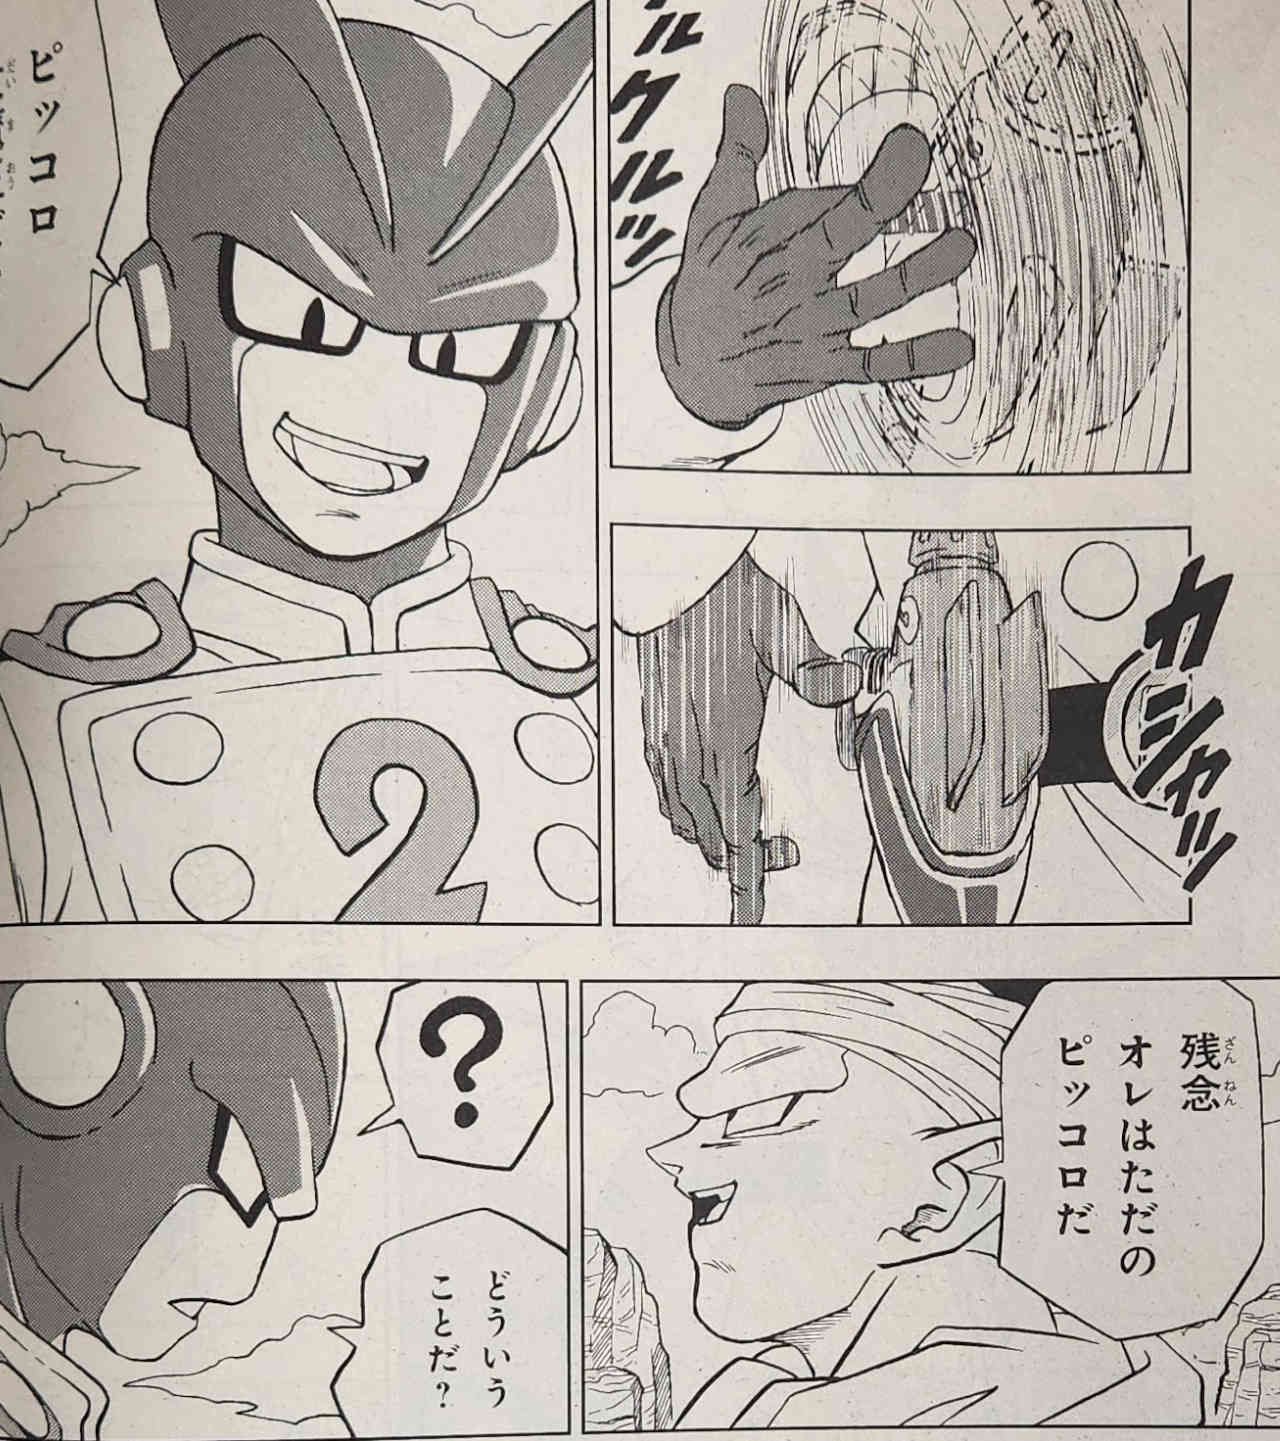 Dragon Ball Super: Filtraciones revelan el arribo de los androides de Super Hero al manga